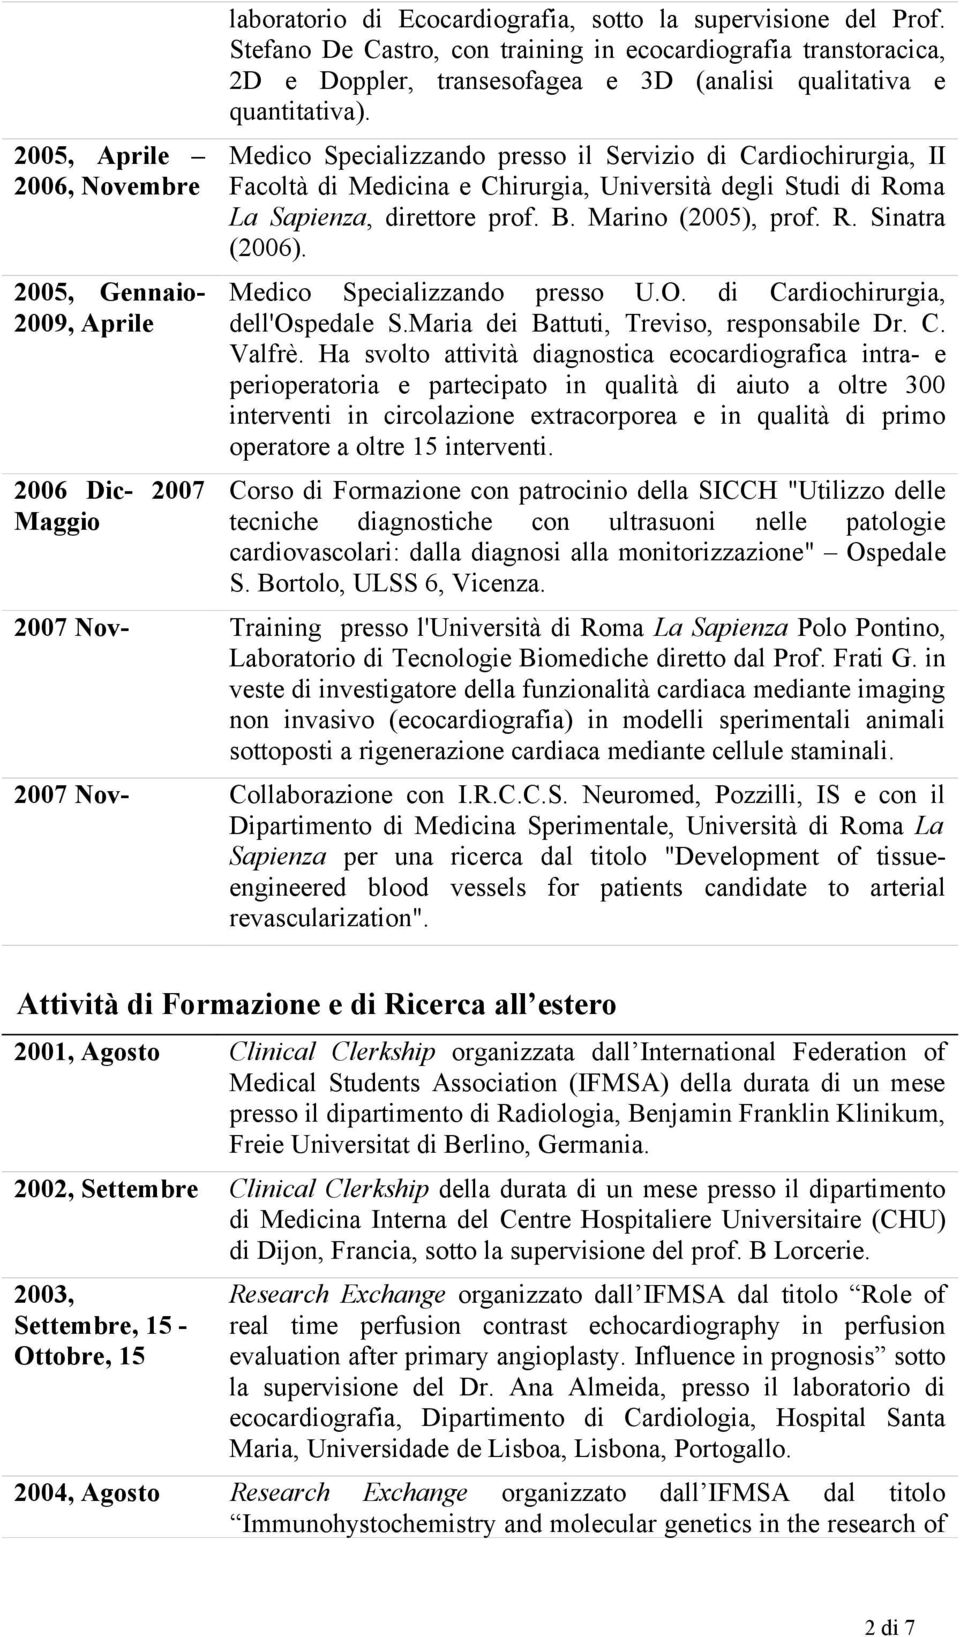 Medico Specializzando presso il Servizio di Cardiochirurgia, II Facoltà di Medicina e Chirurgia, Università degli Studi di Roma La Sapienza, direttore prof. B. Marino (2005), prof. R. Sinatra (2006).